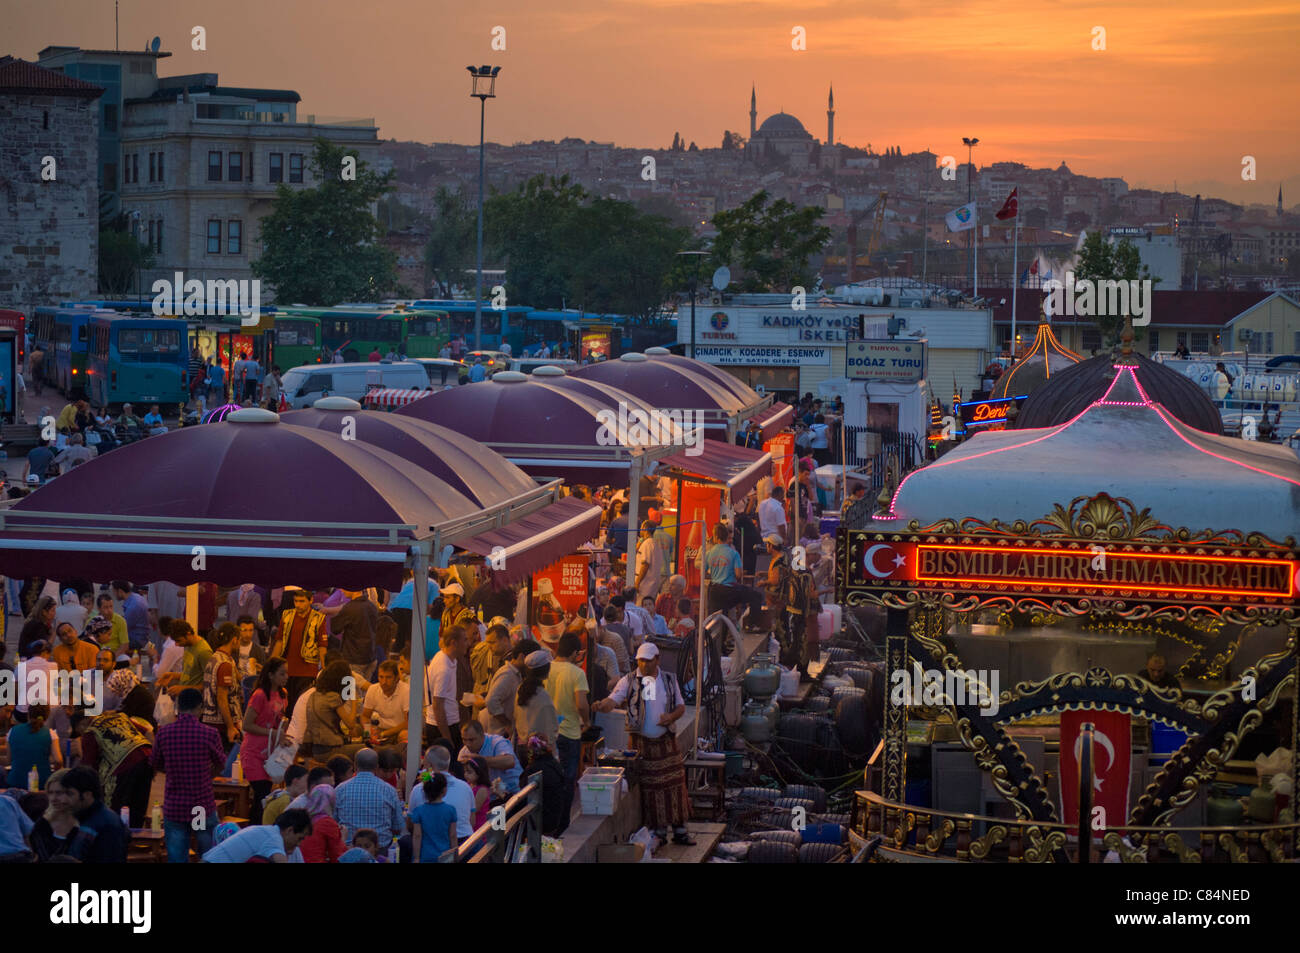 Los barcos tradicionales para cocinar y vender alimentos, Eminonu, puente de Galeta, Estambul, Turquía, Europa Foto de stock